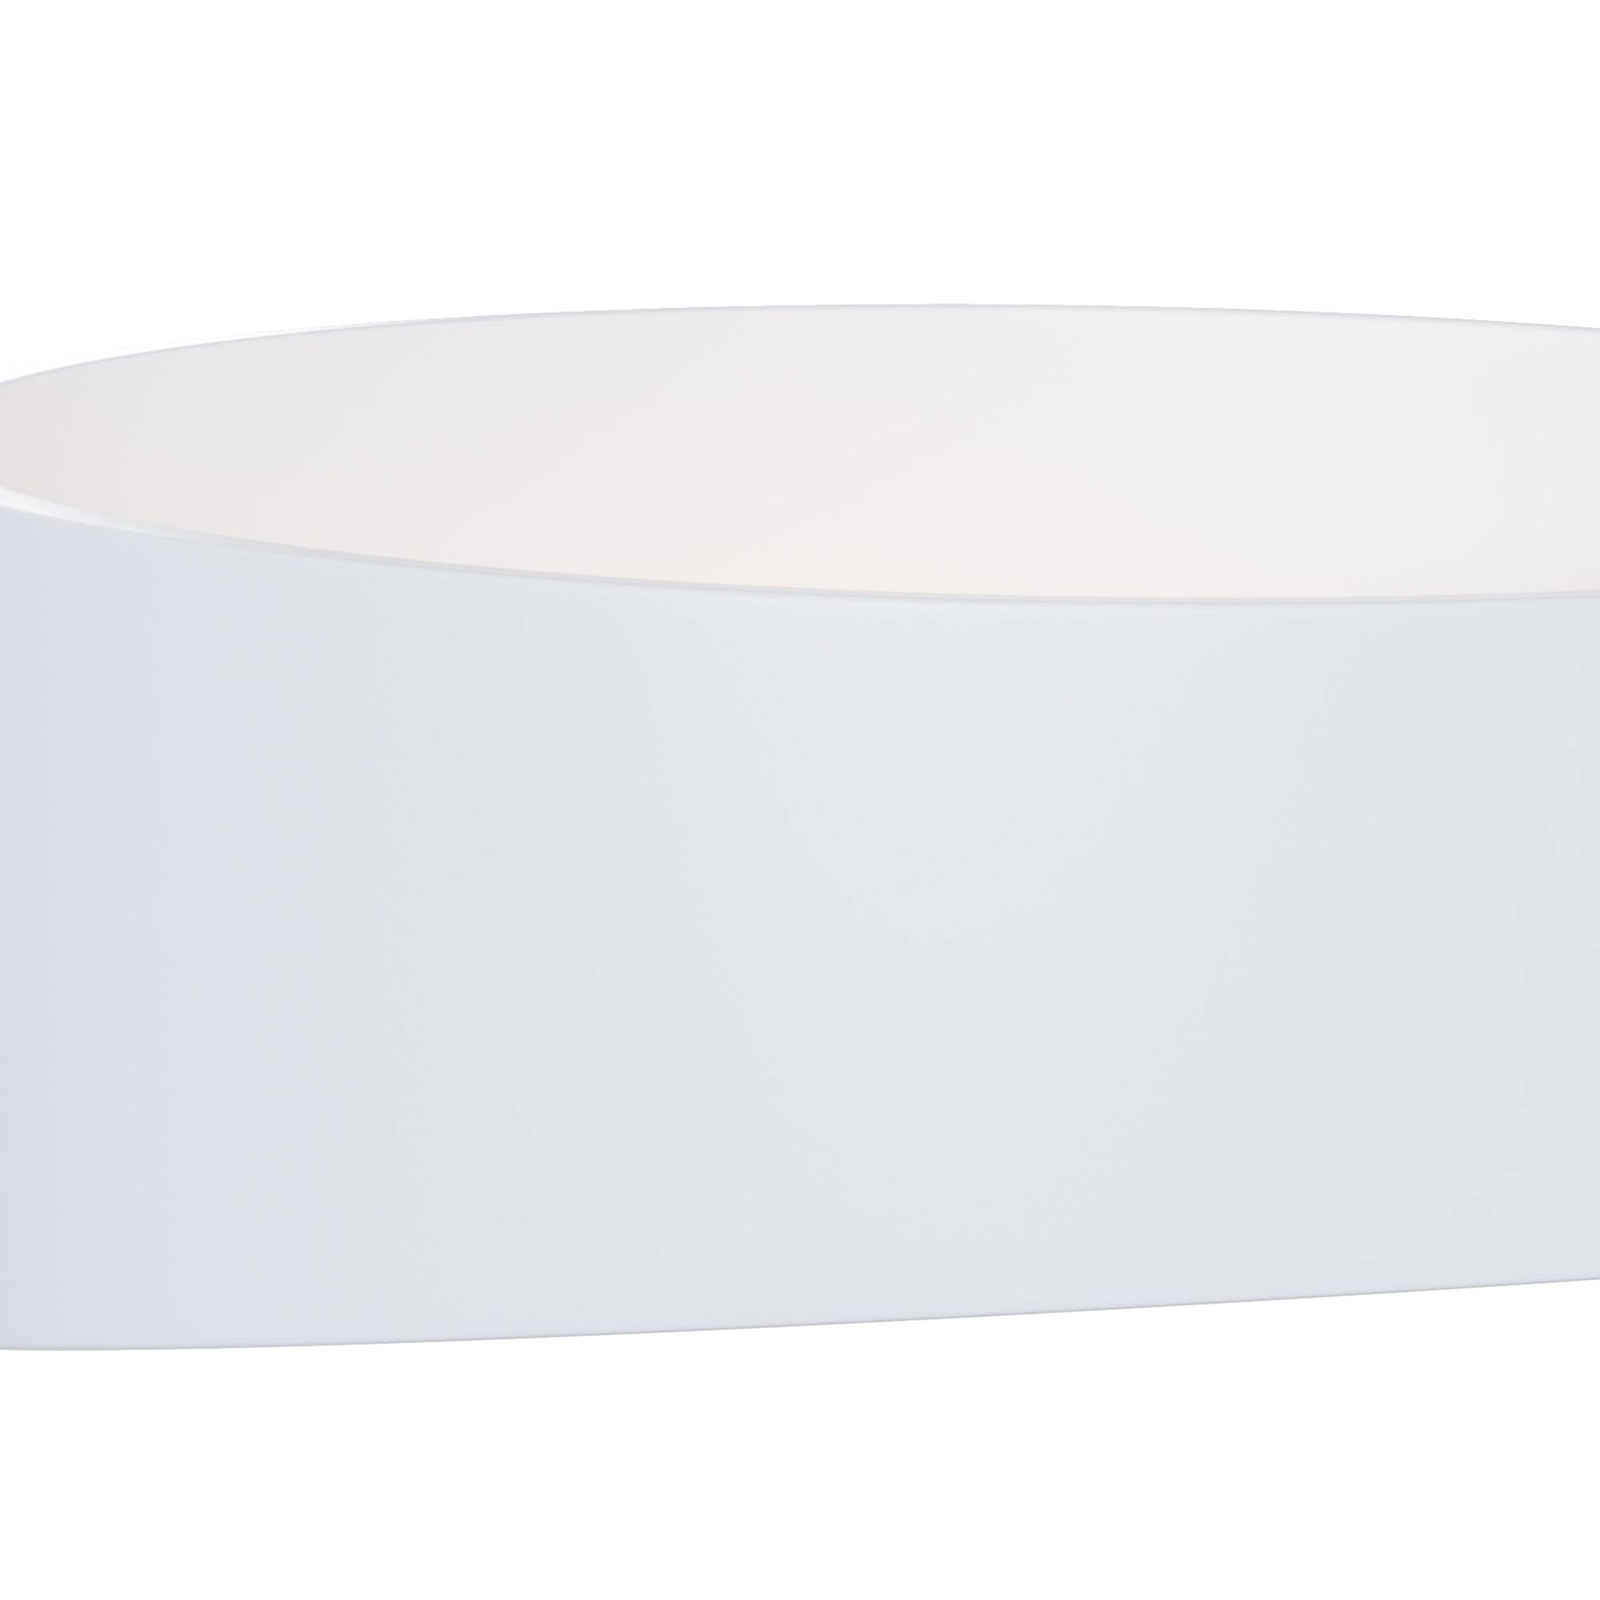 Kinkiet LED Trame, owalny kształt w kolorze białym